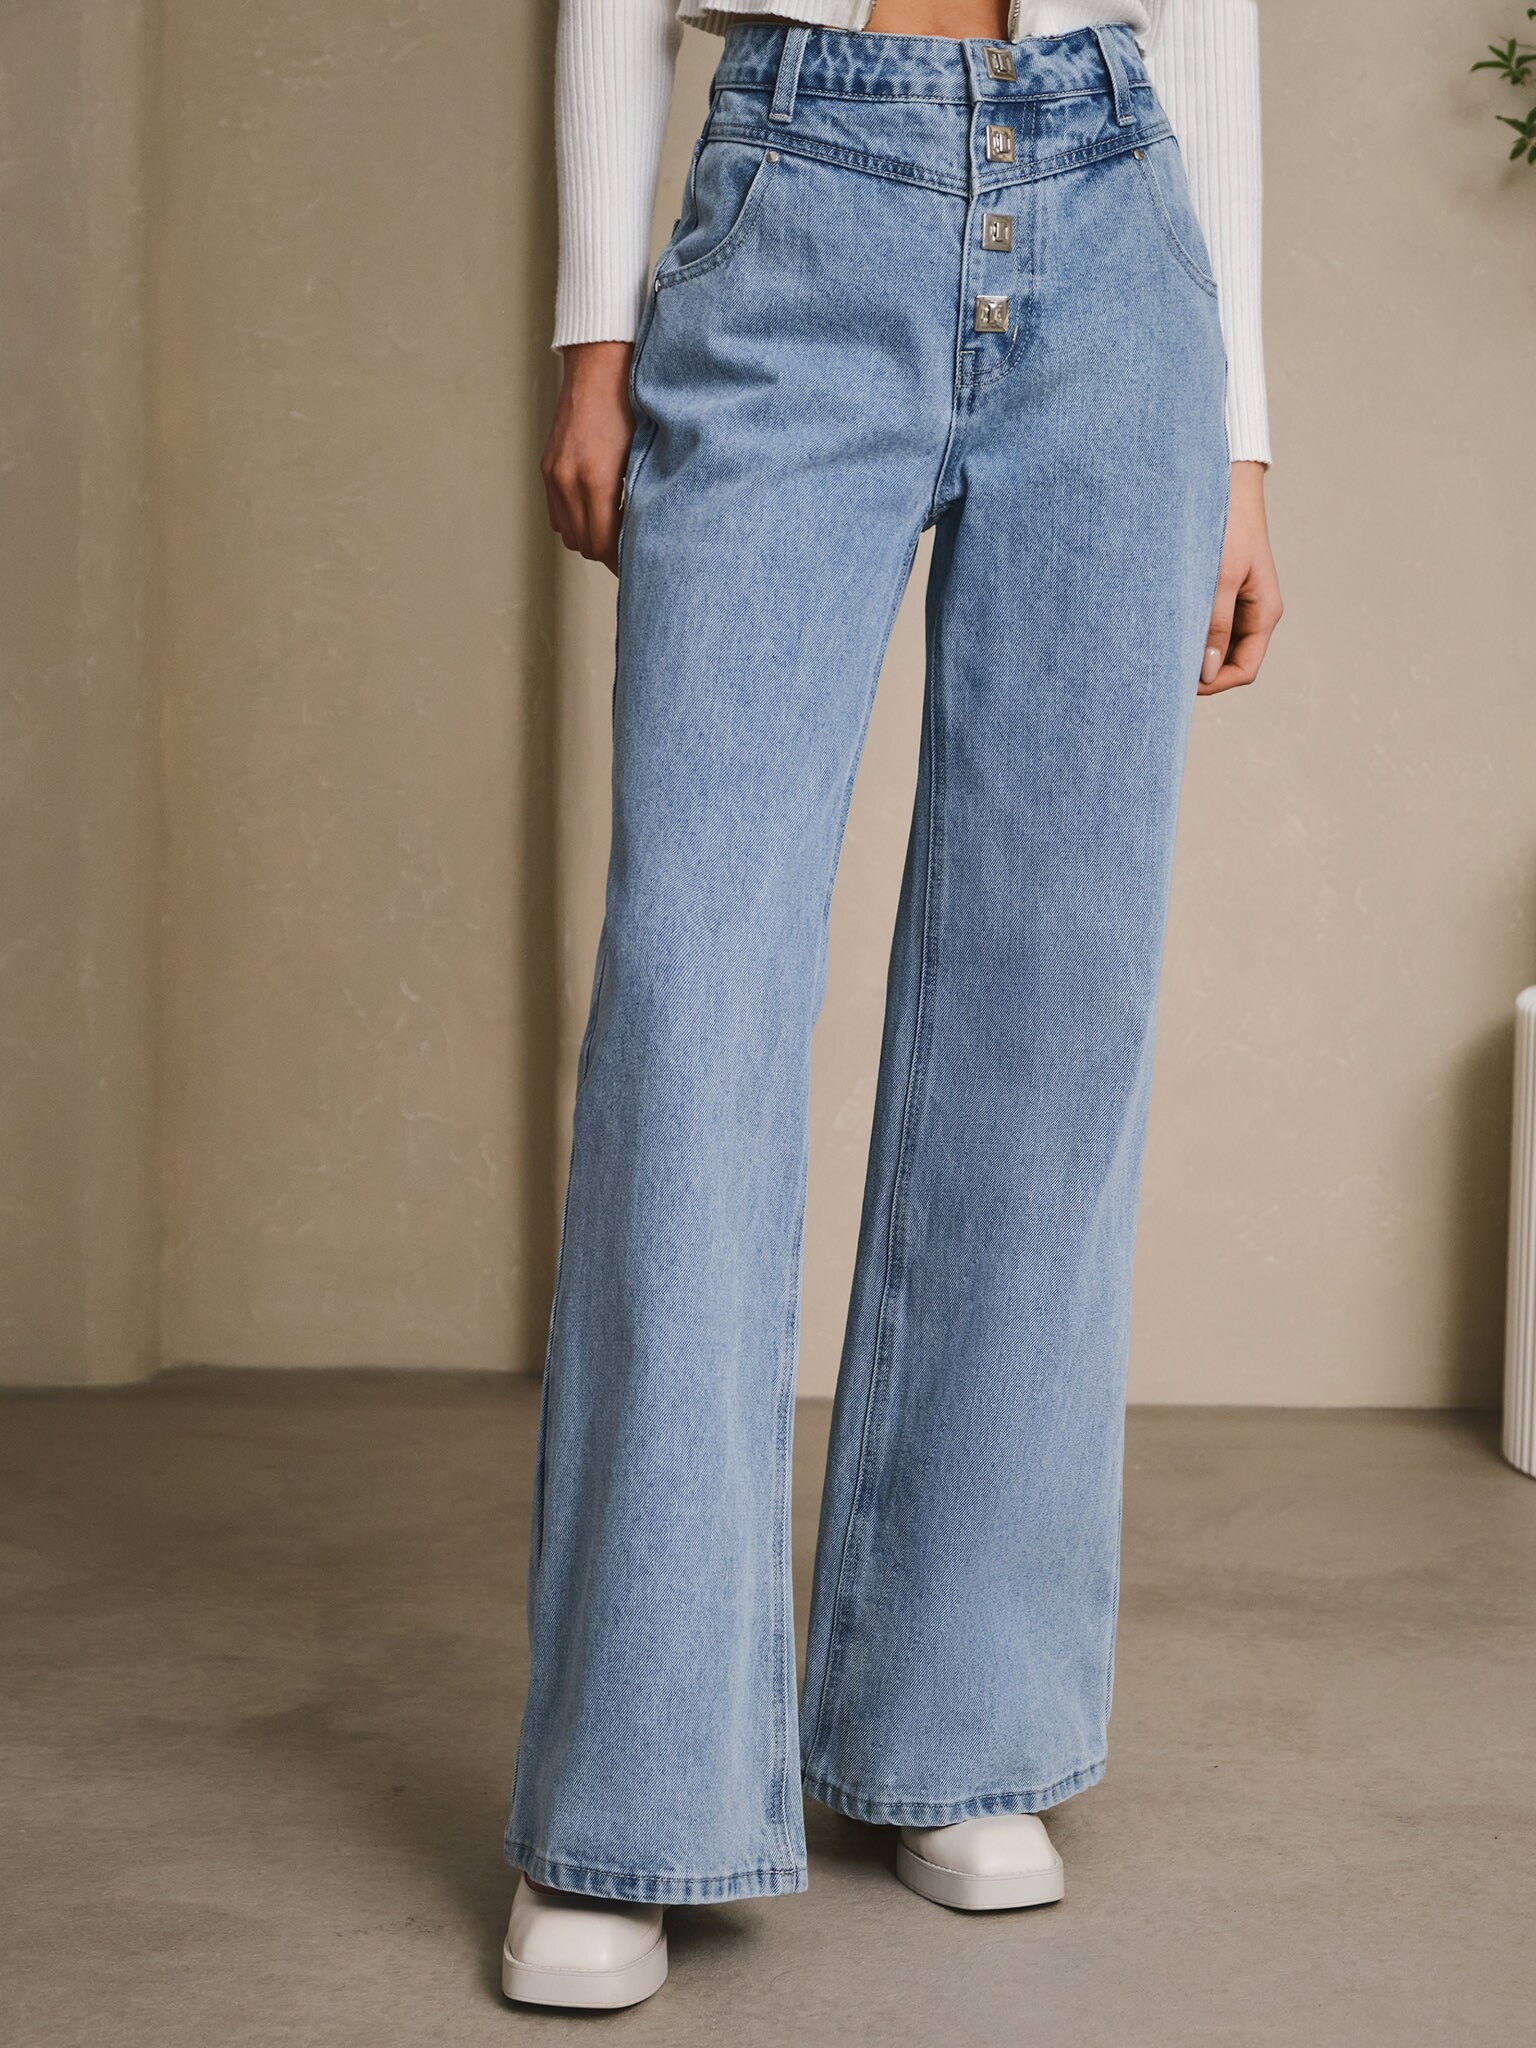 Denim | Shop Women's Denim Jeans & Clothes Online | Boutique Bleu